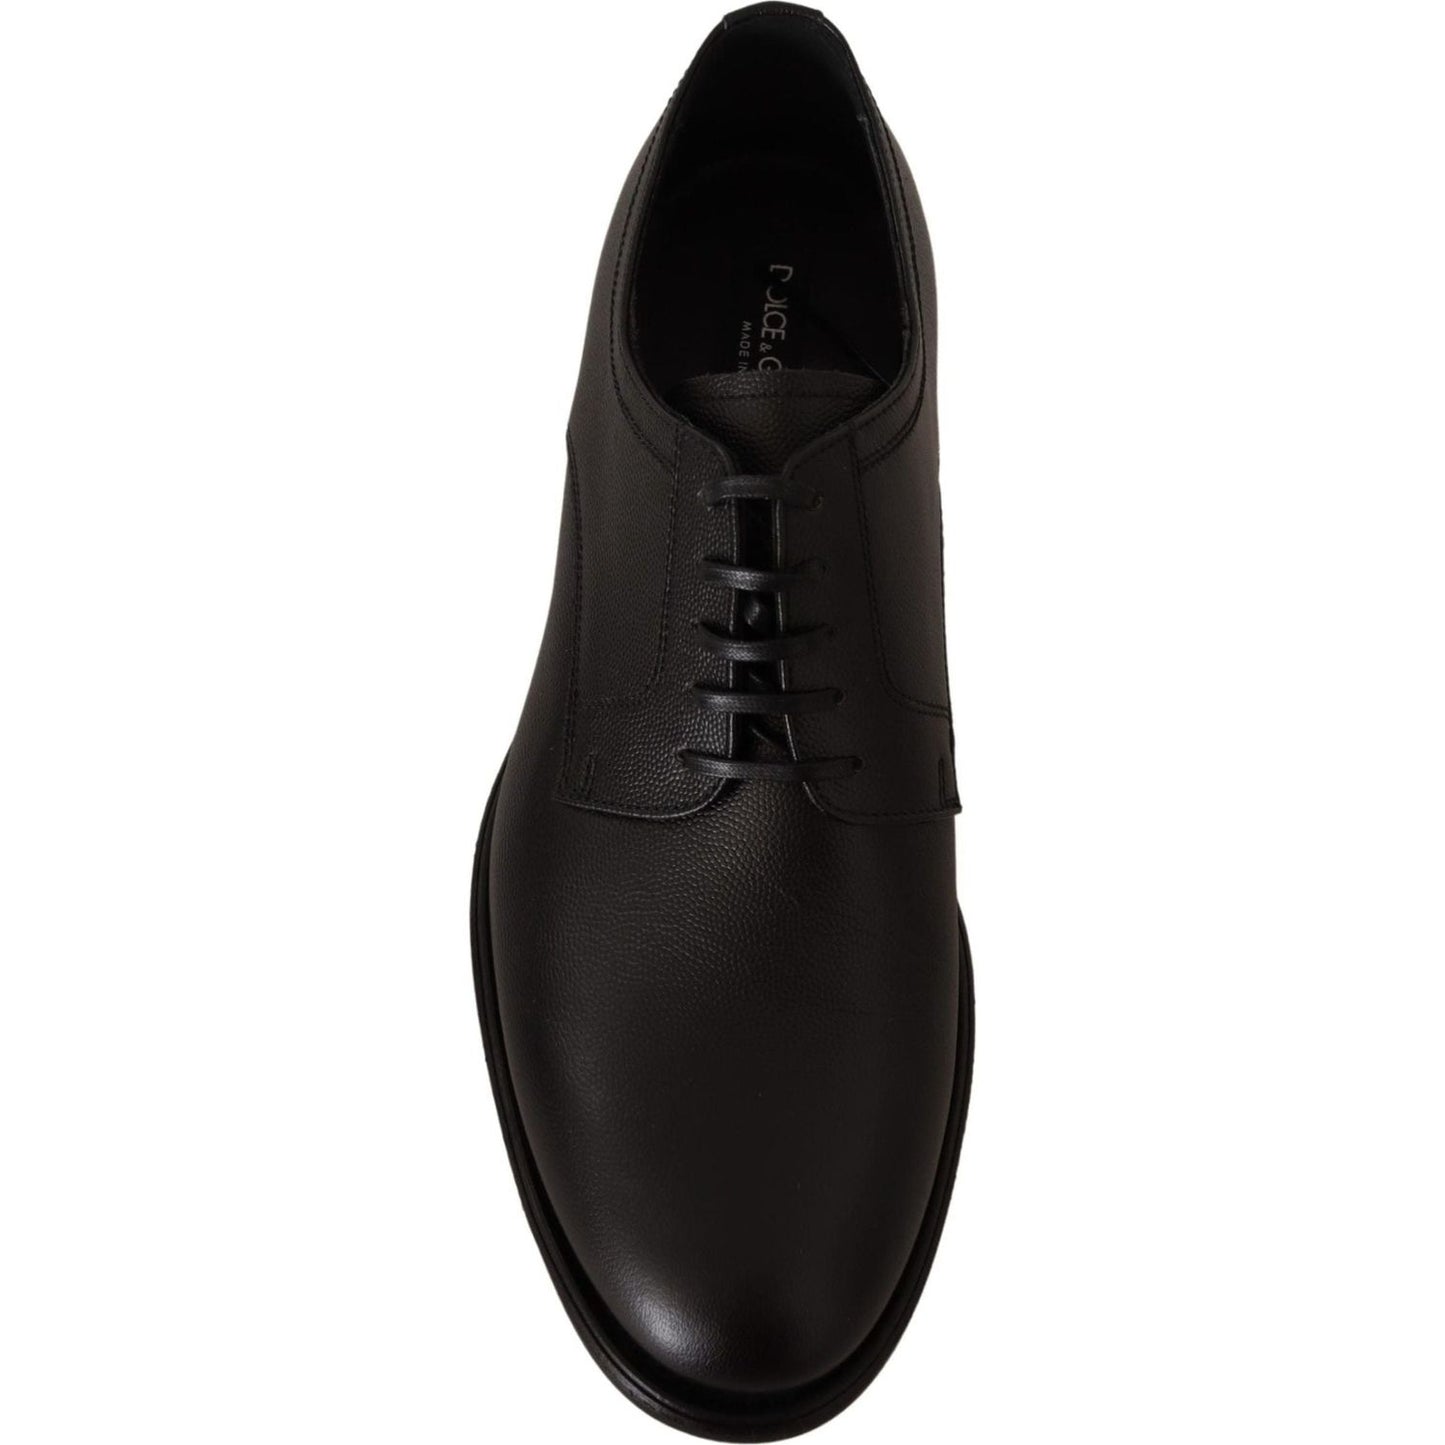 Dolce & Gabbana Elegant Black Leather Derby Shoes black-leather-lace-up-mens-formal-derby-shoes-1 IMG_4975-scaled-6061cc65-b71.jpg